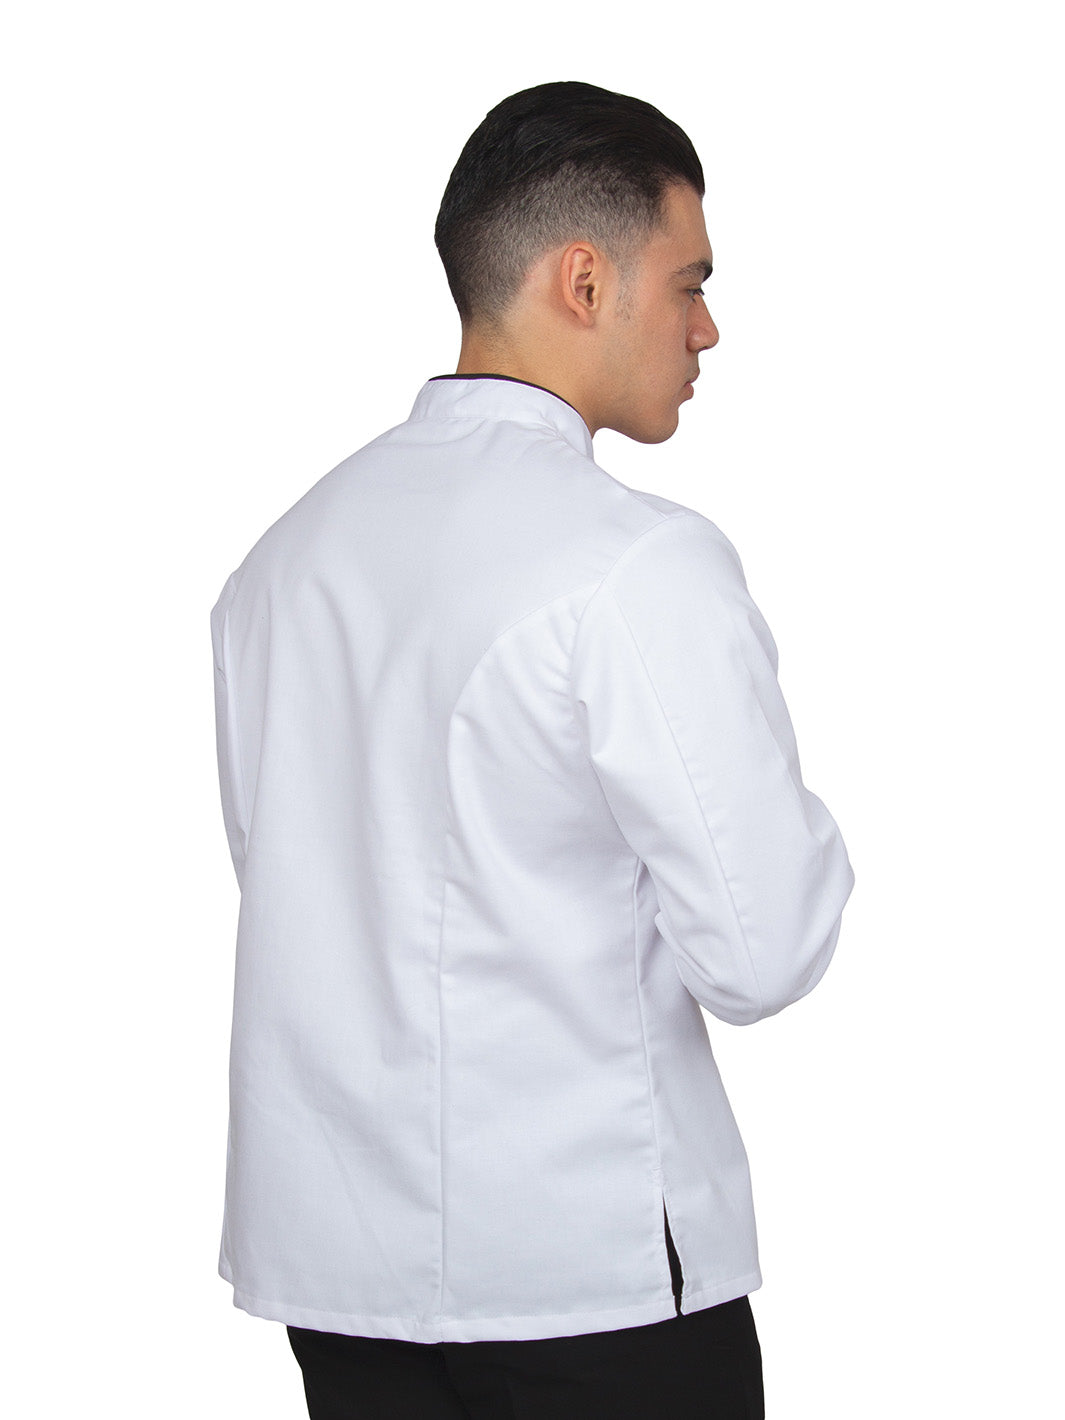 Hombre vistiendo filipina de chef unisex color blanco con vistas negras, mangas de puño redondeado, doble fila de botones con cruce reversible, y bolsa en manga izquierda. 